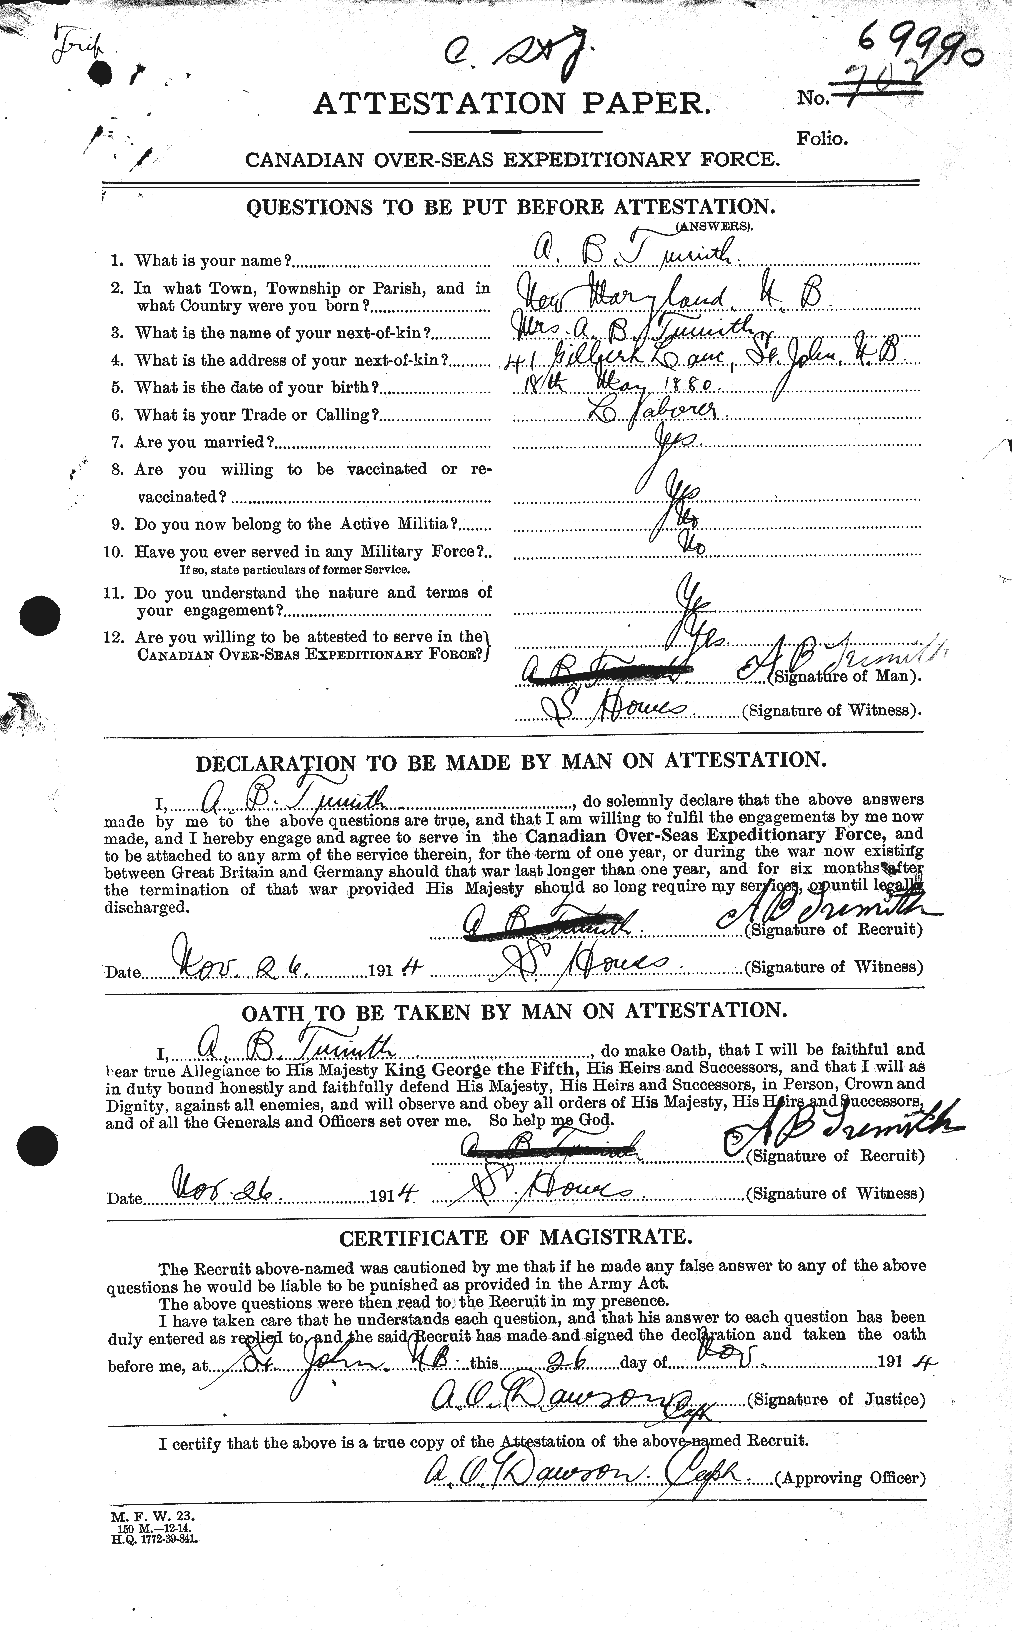 Dossiers du Personnel de la Première Guerre mondiale - CEC 644425a